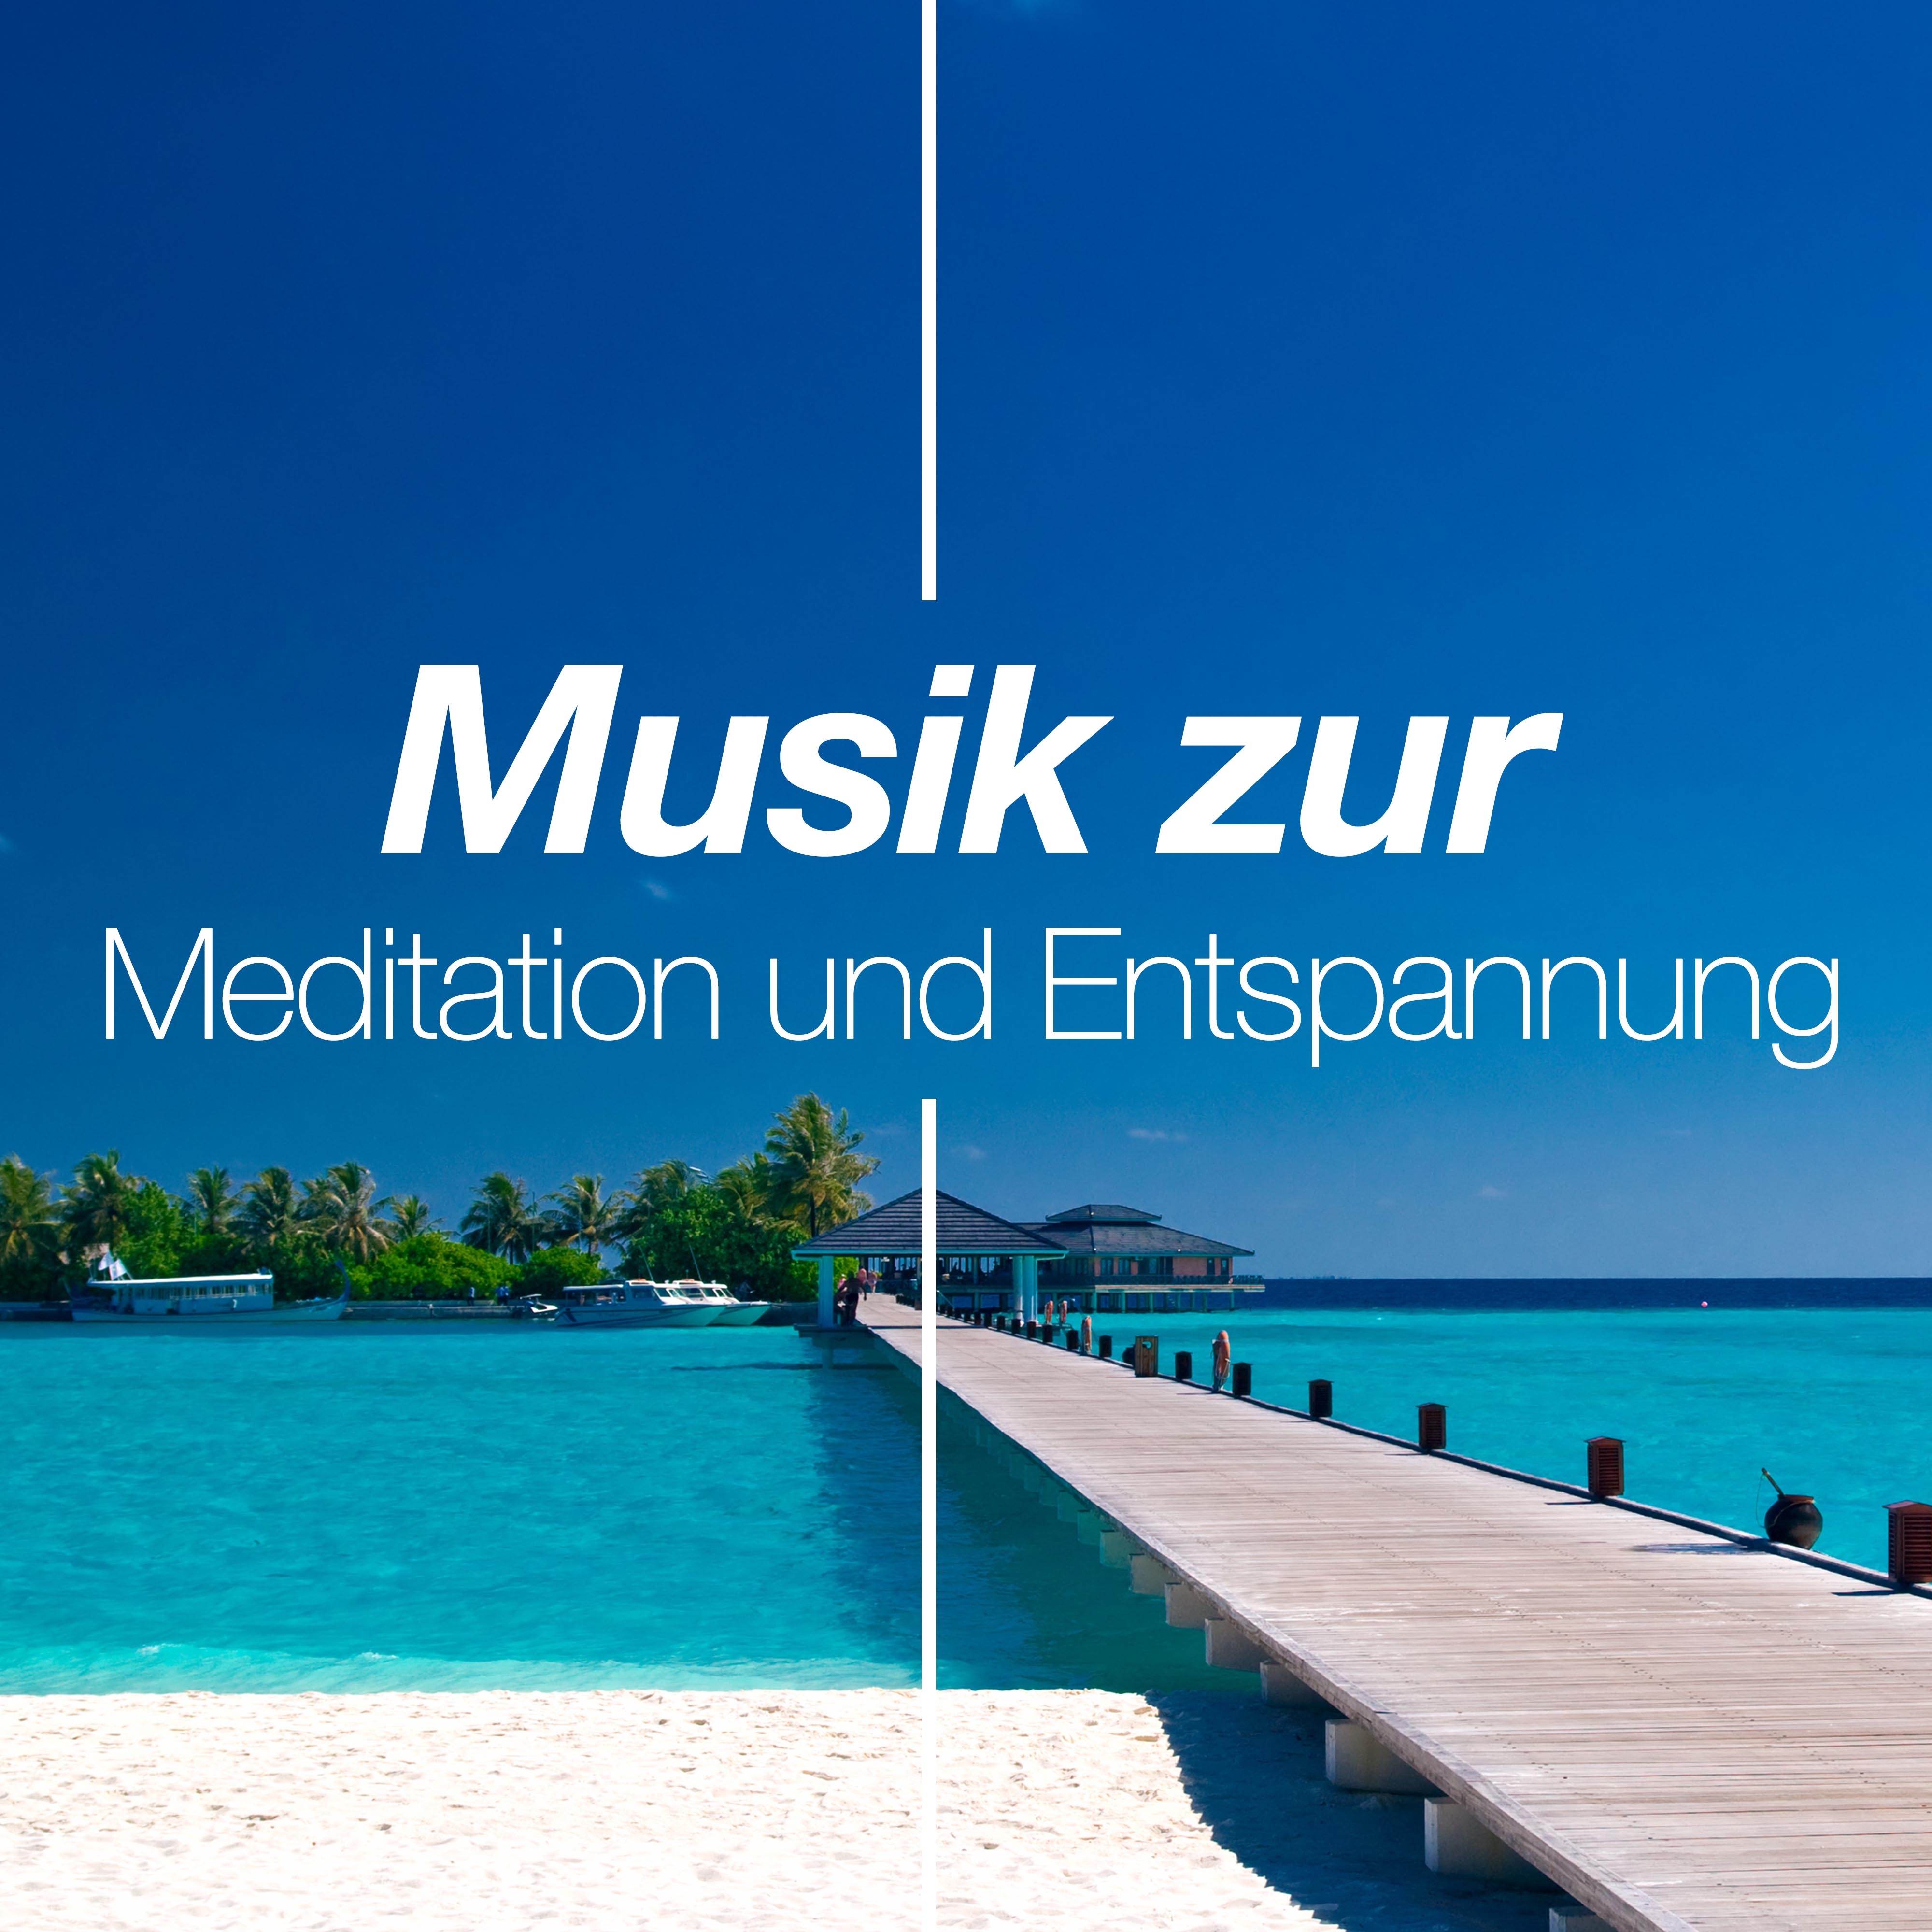 Musik zur Meditation und Entspannung: Naturgeräusche, Meeresrauschen für Entspannungstechniken, Frieden, Ruhe, Beruhigen und Gelassenheit